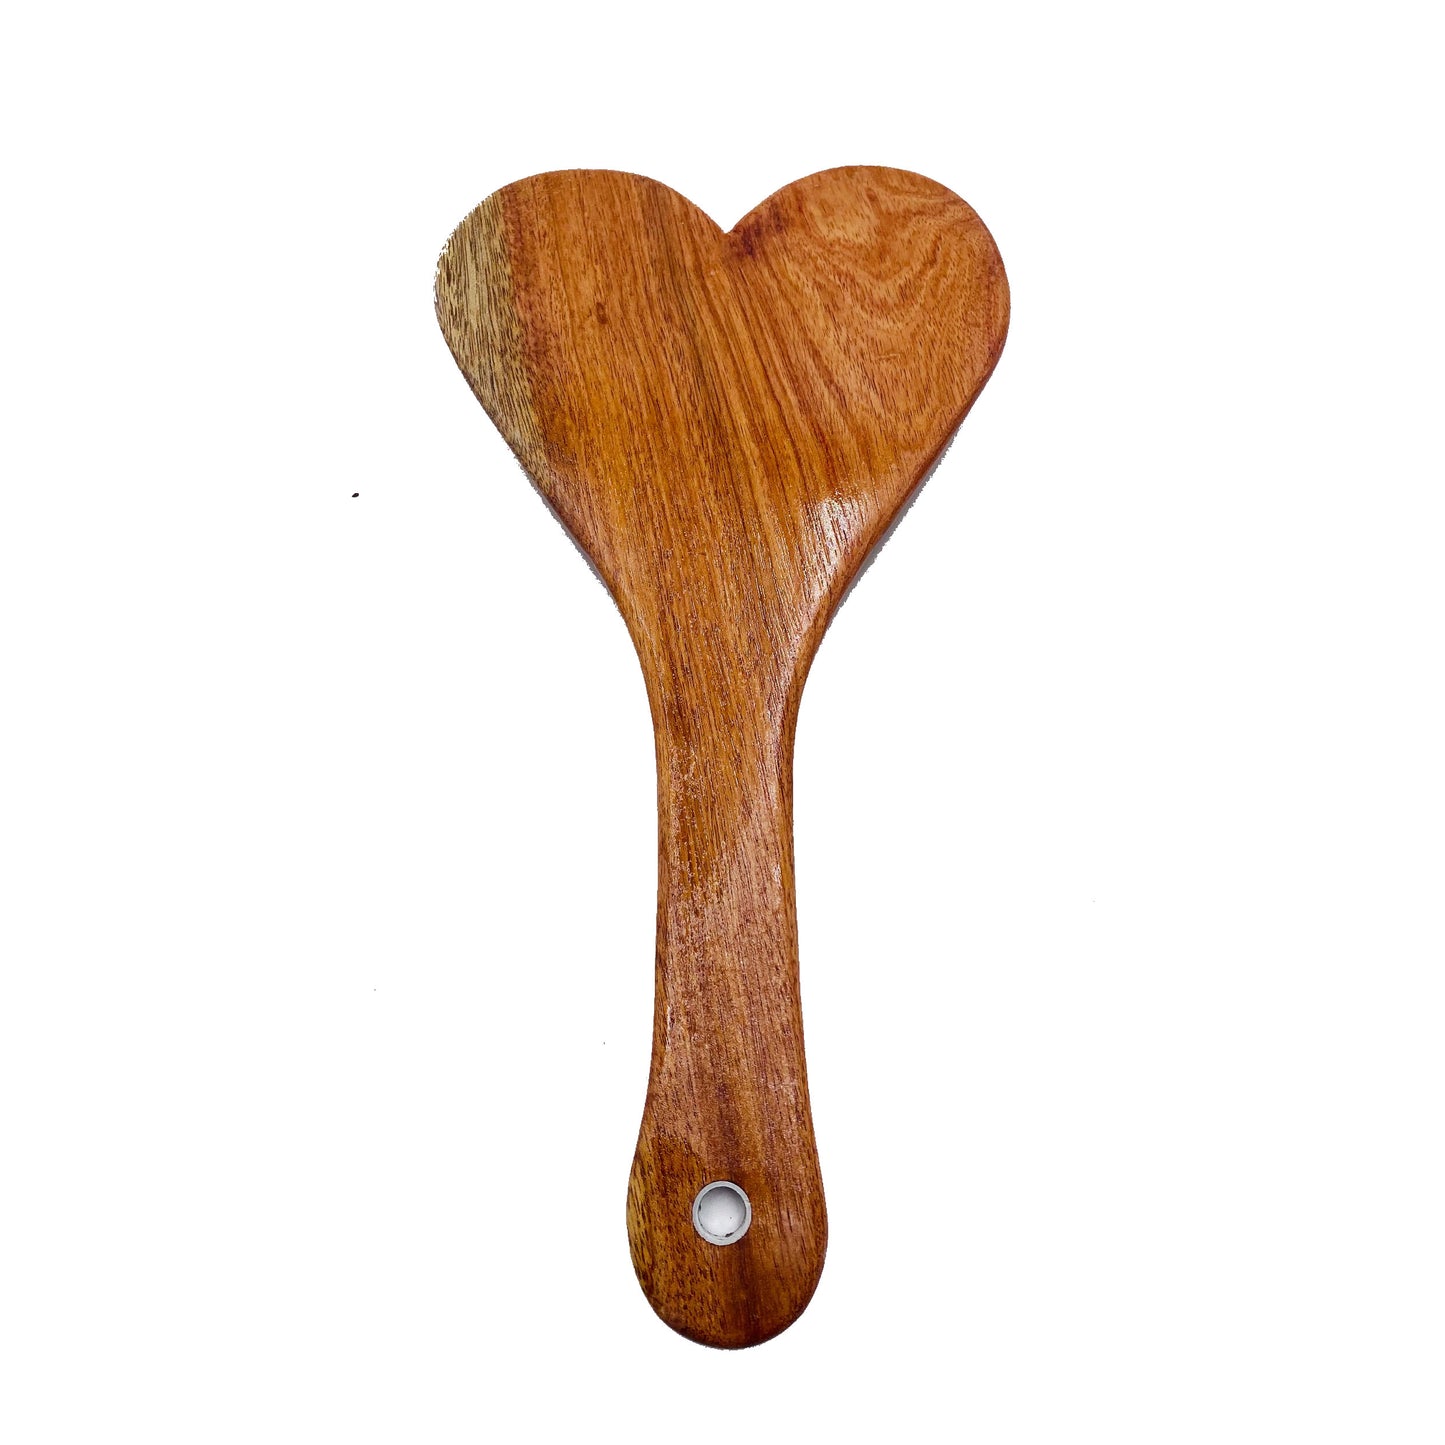 heart, big heart, Spanking Paddle, hardwood paddle, wood paddle, OTK, paddle, spanking paddle, paddle, bdsm, impact, punishment, discipline